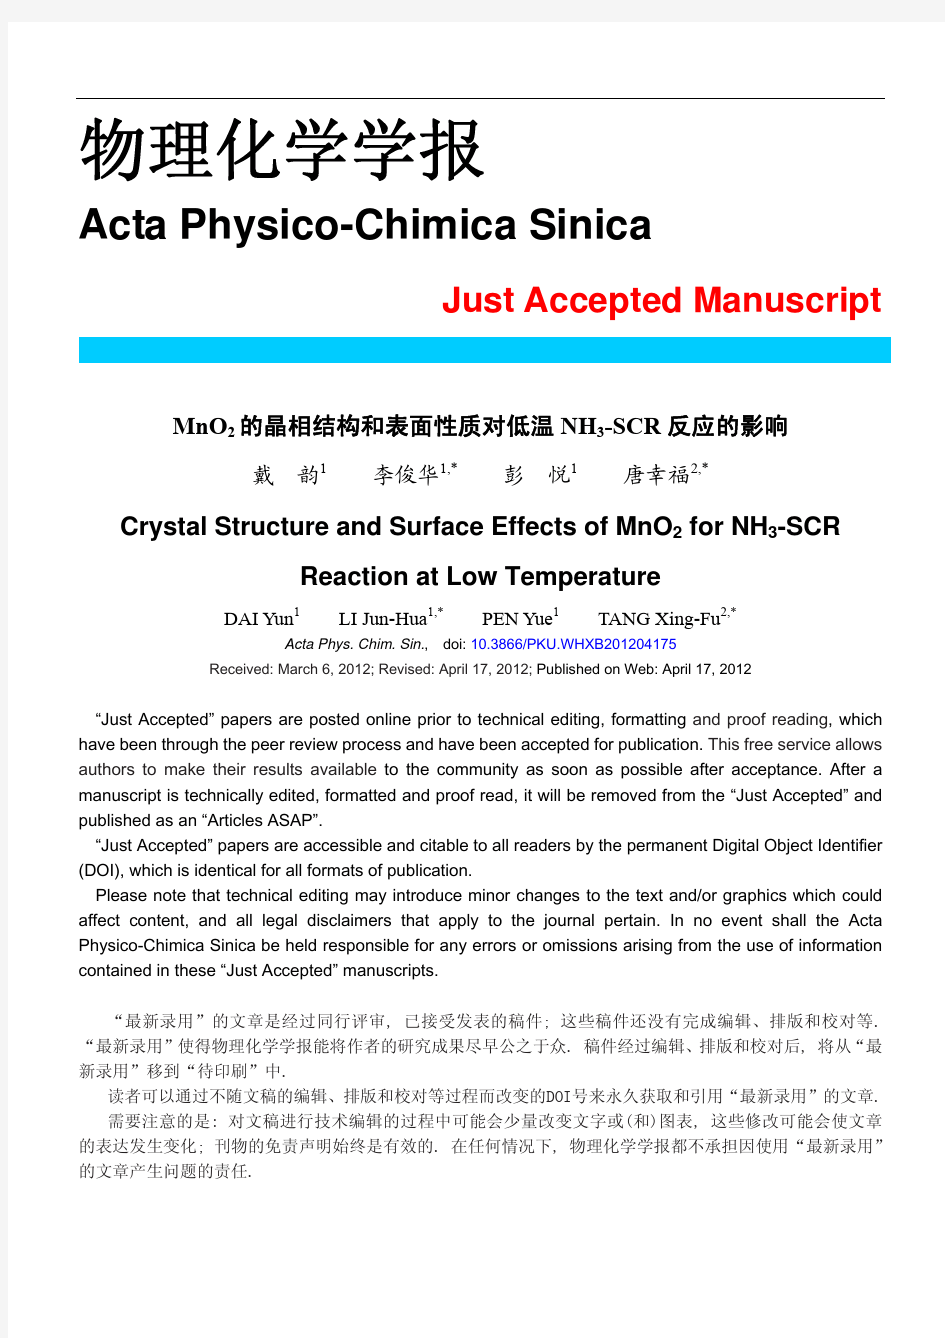 MnO2的晶相结构和表面性质对低温NH3-SCR反应的影响